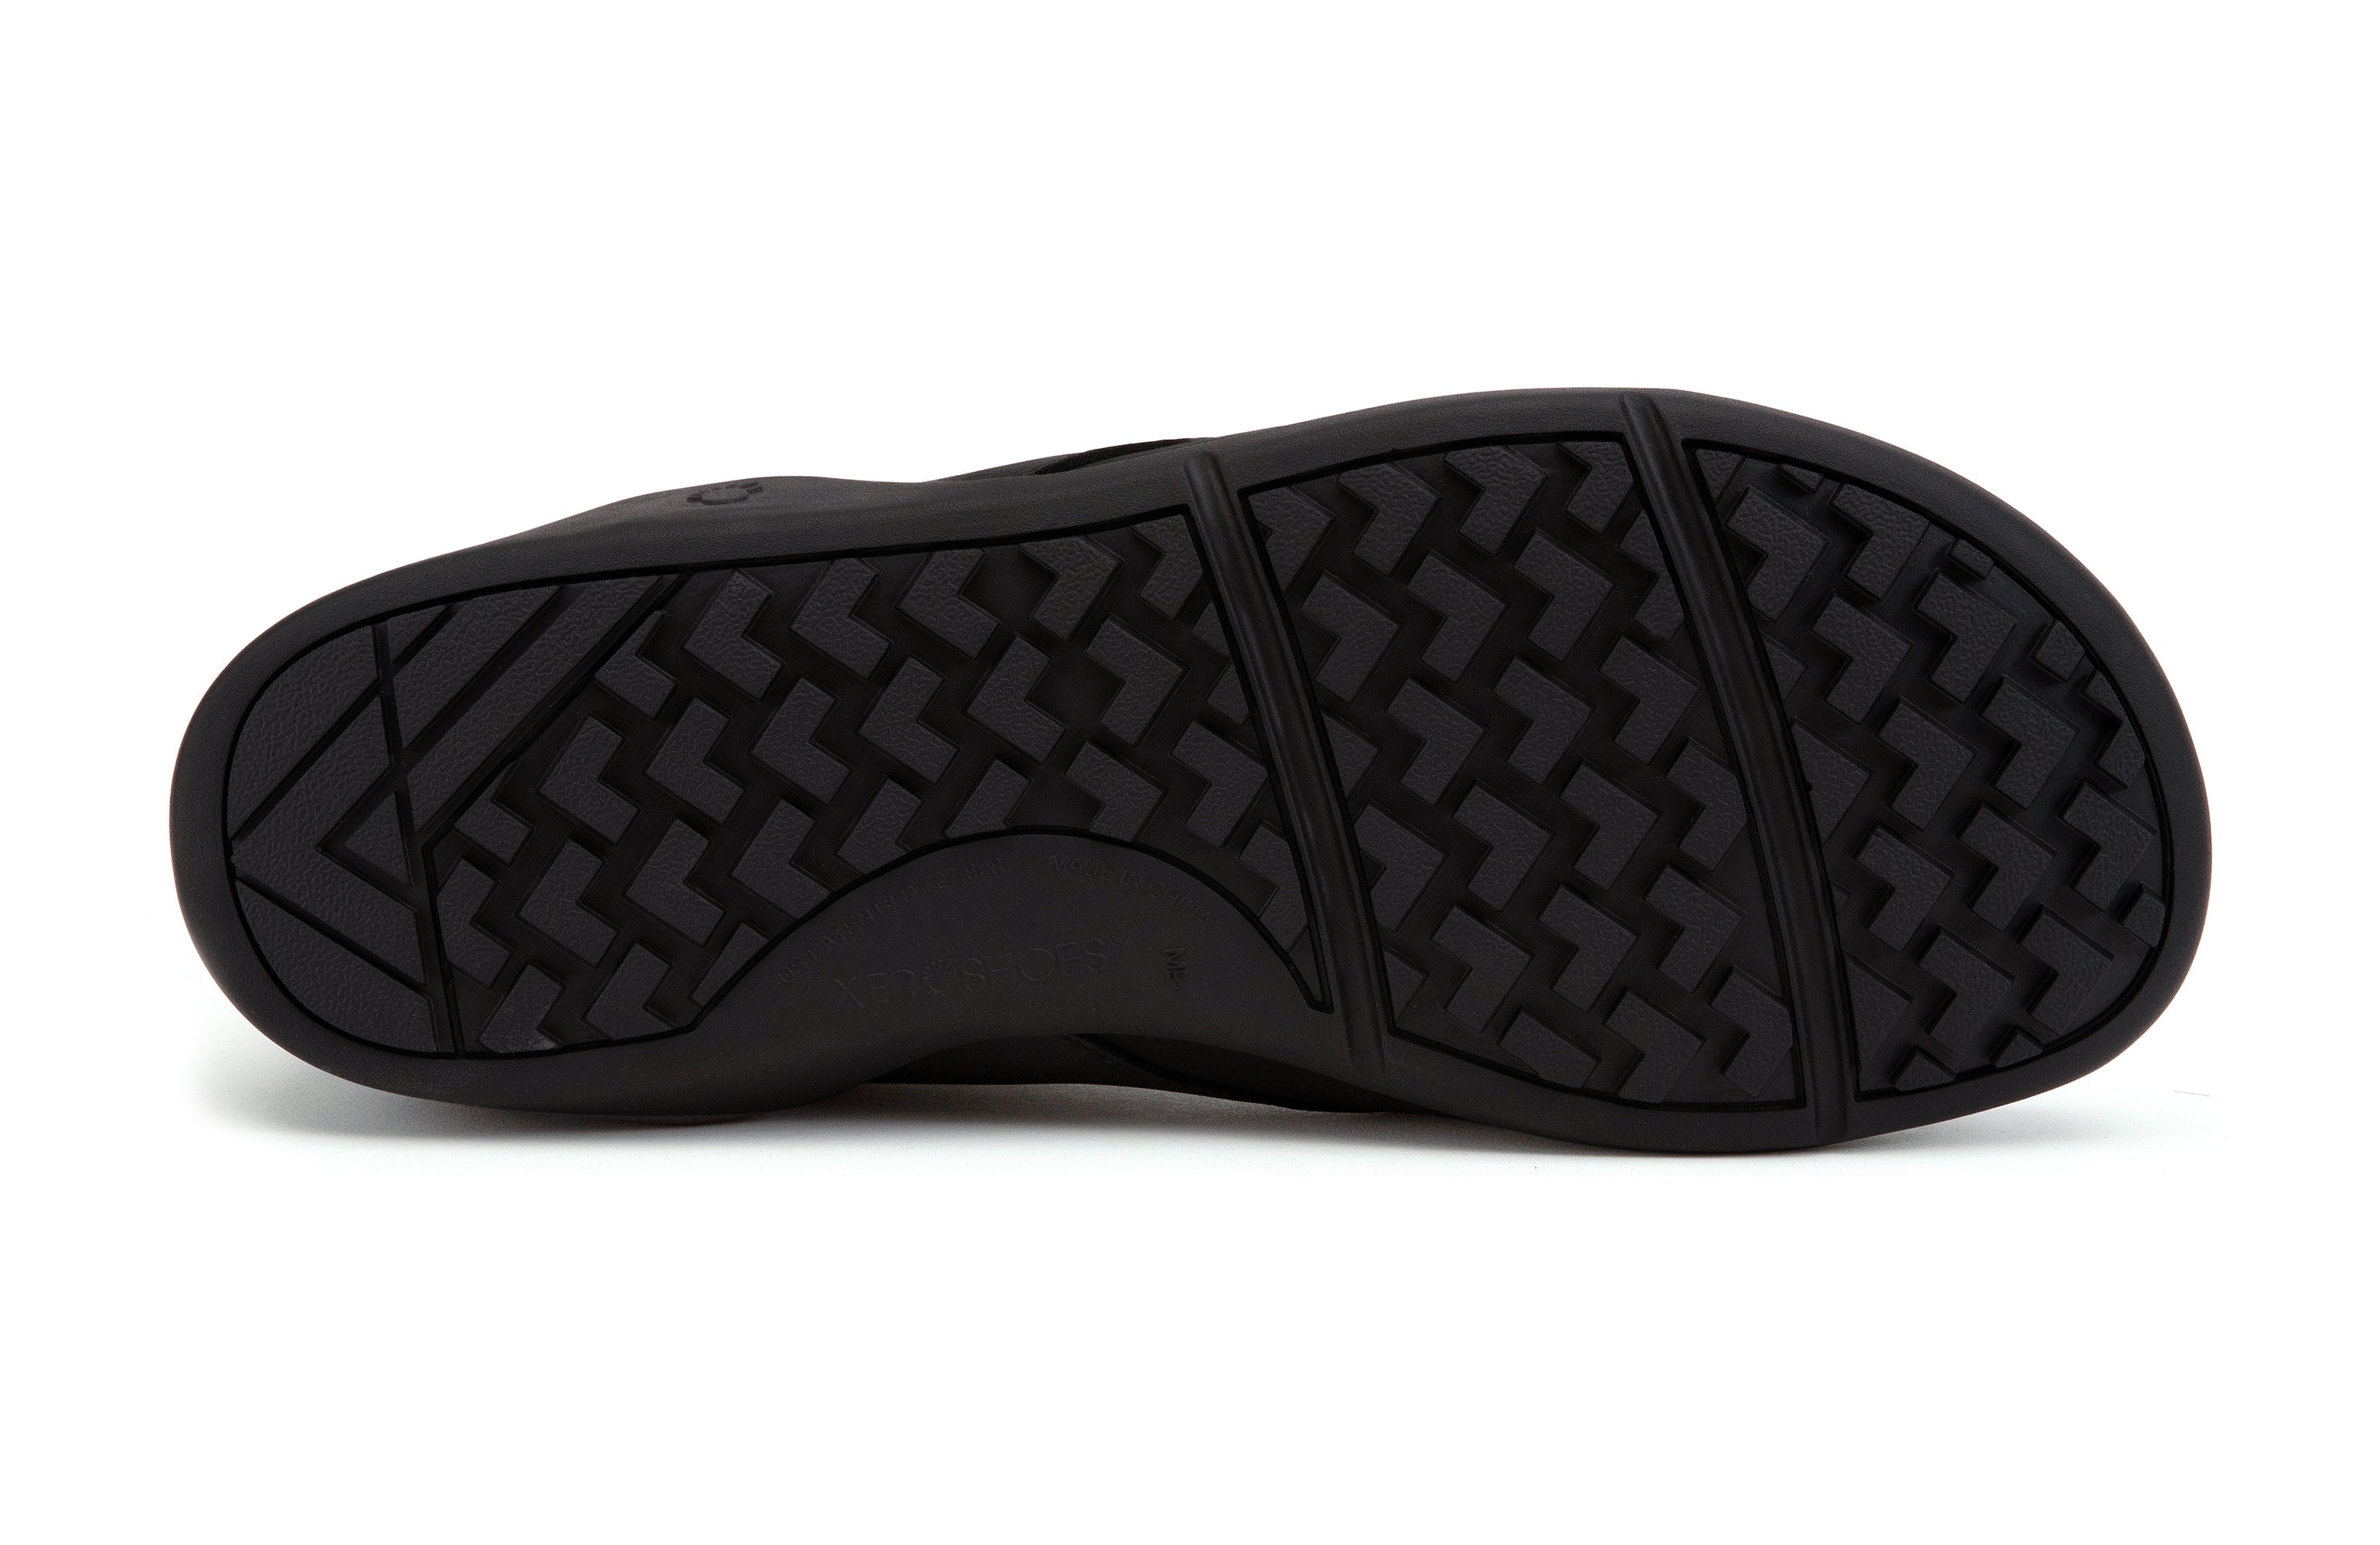 Xero Shoes Denver Leather barfods vinterstøvler til mænd i farven black, saal